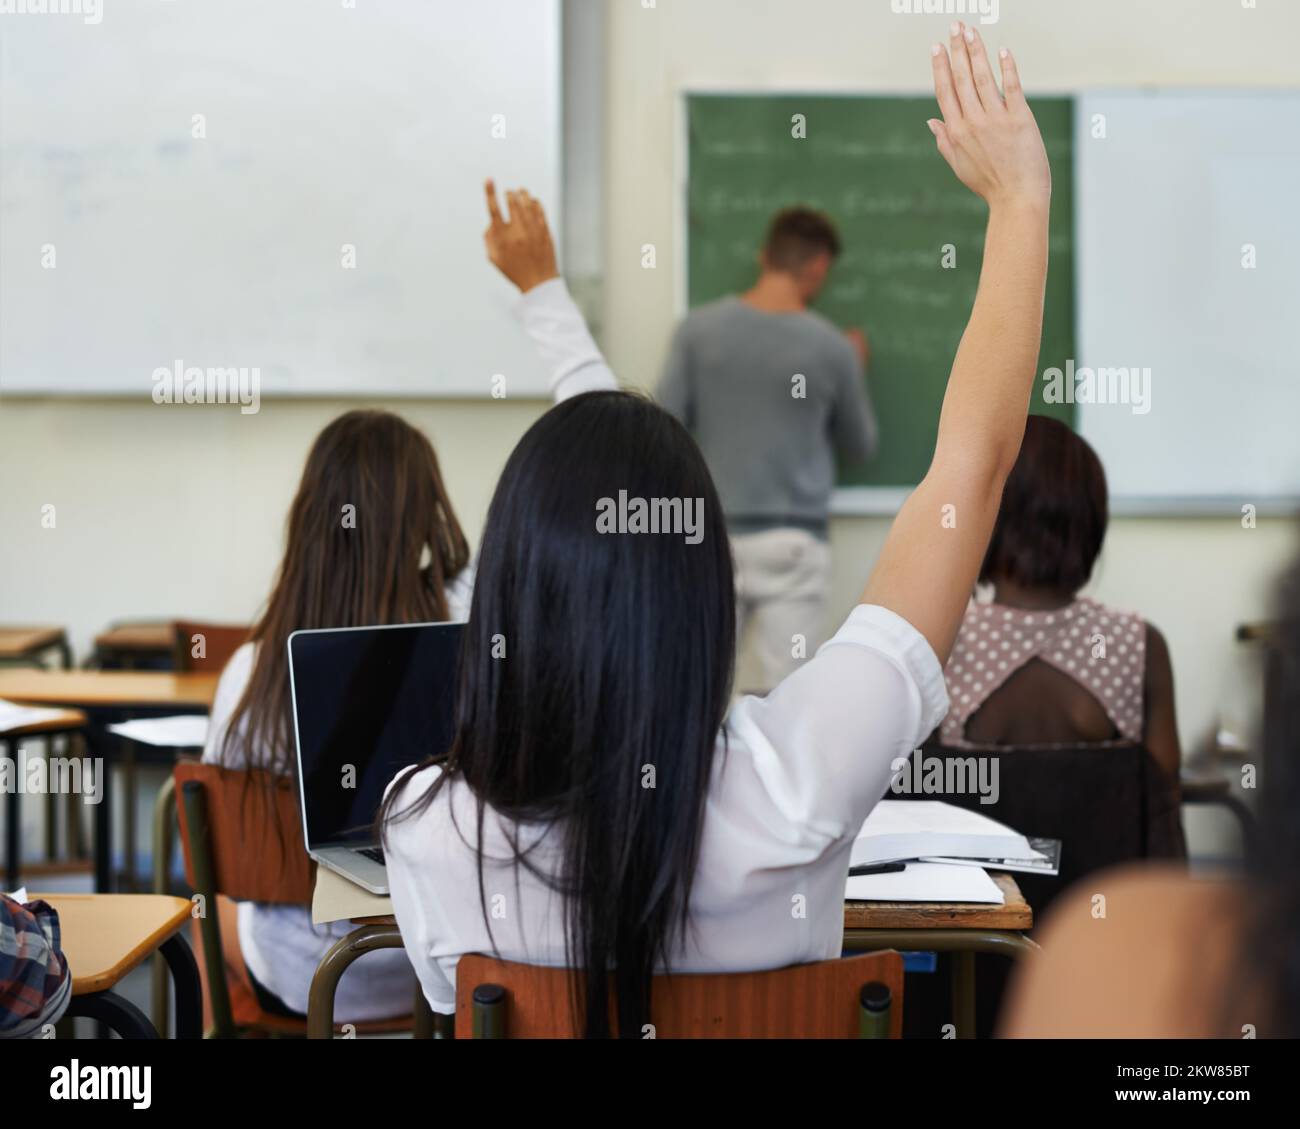 Ho una domanda... Una studentessa che solleva la mano per fare una domanda durante la lezione. Foto Stock